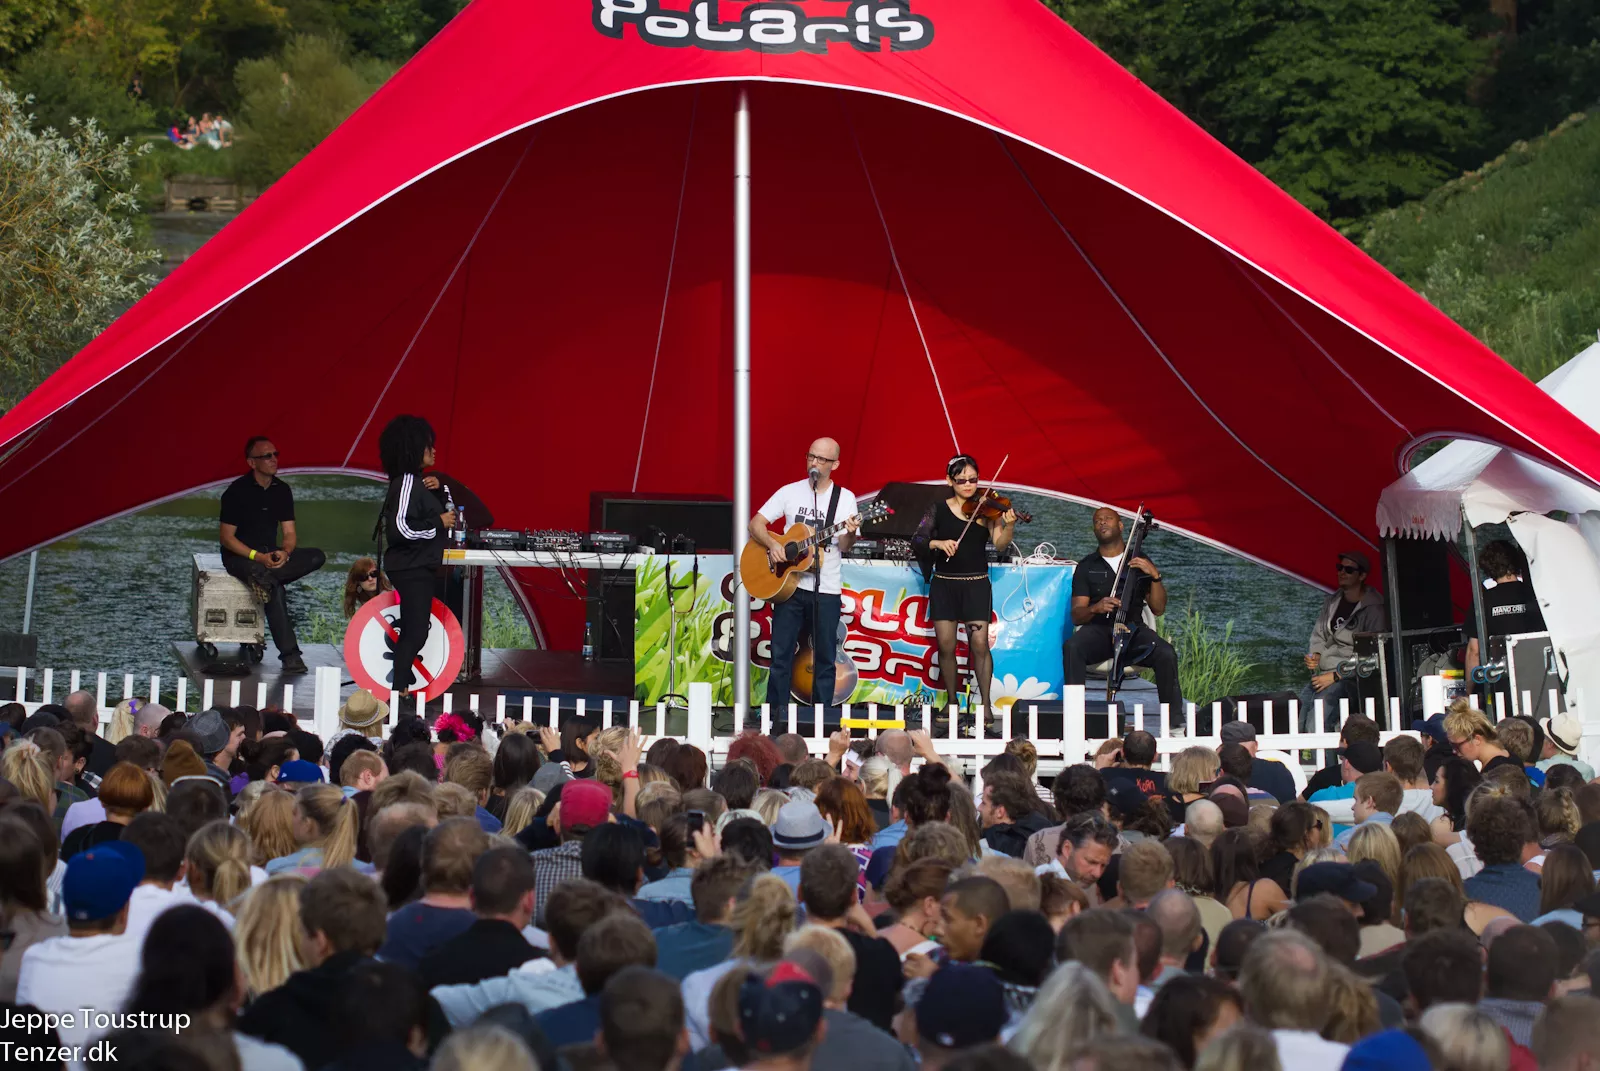 Stella Polaris i Aarhus gentages søndag efter regnfuld lørdag